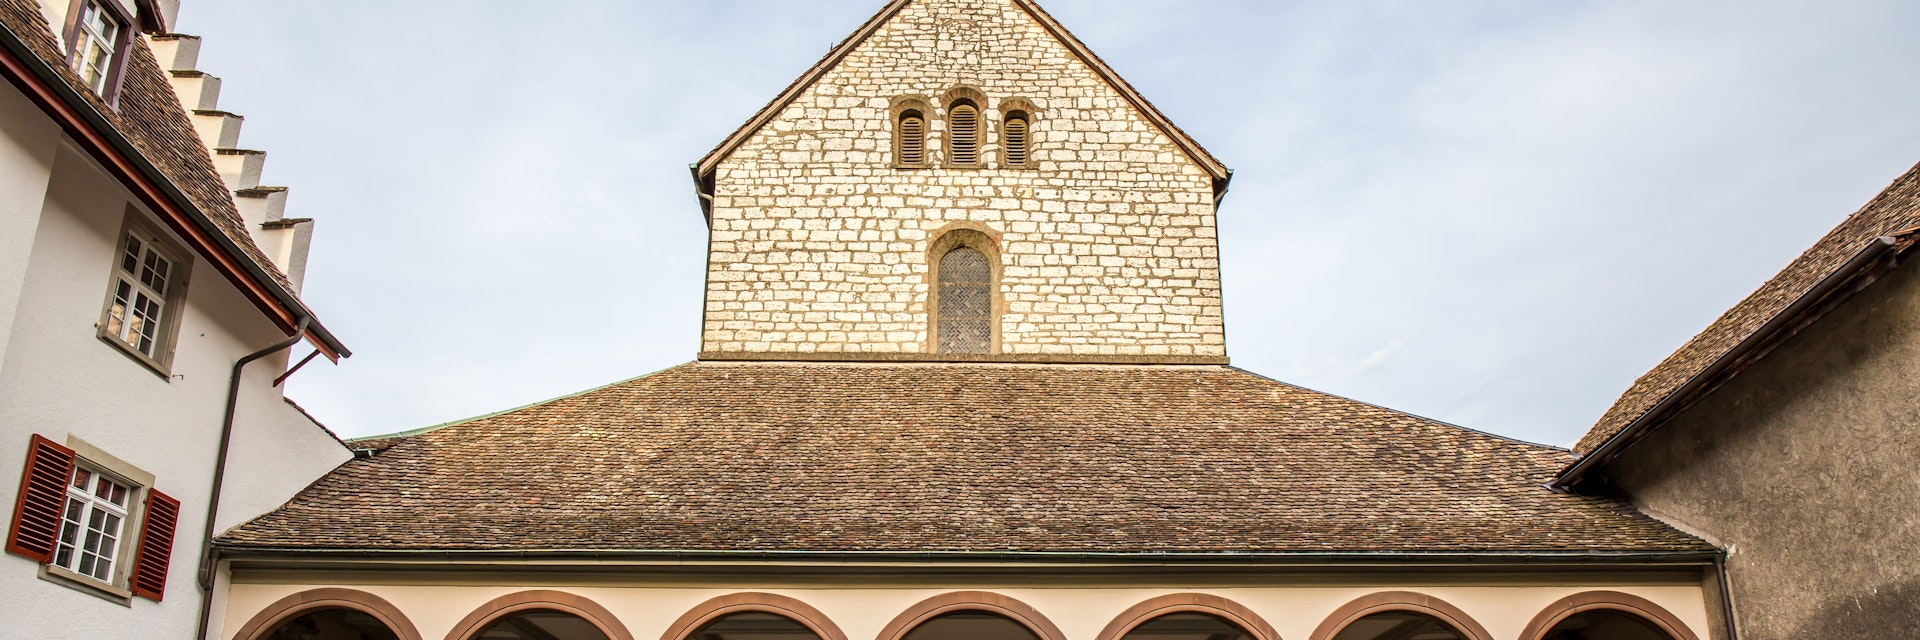 Kloster Allerheiligen, a former Benedictine monastery in Schaffhausen, Switzerland.